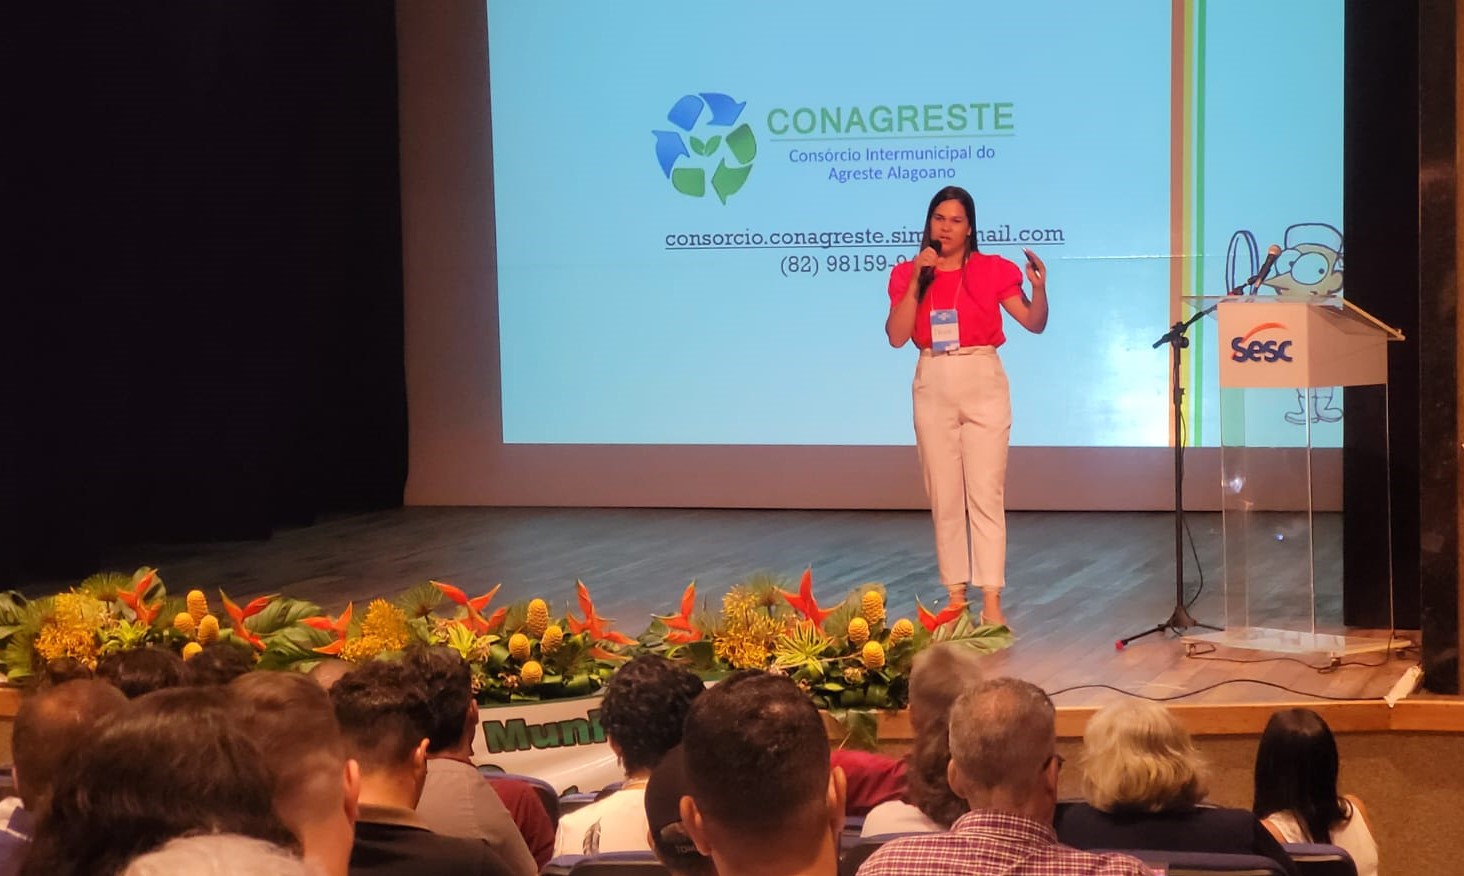 Conagreste participa do 2º Seminário de Carcinicultura do Agreste Alagoano e apresenta Serviço de Inspeção do Consórcio